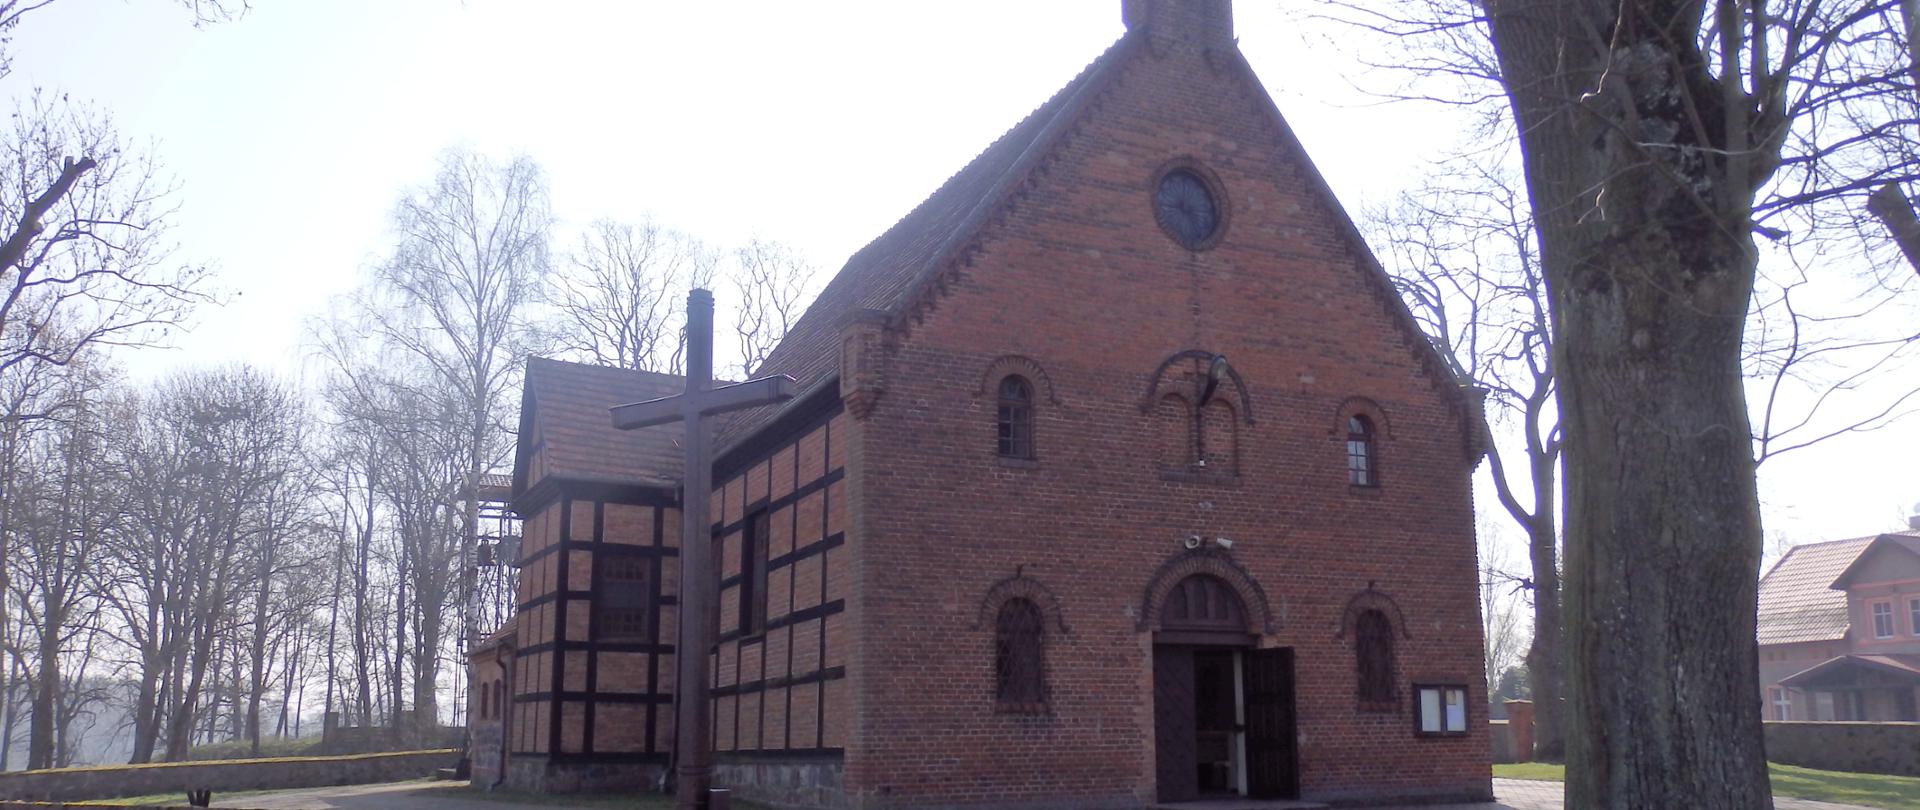 kościół z czerwonej cegły i spadzistym dachem otoczony kamiennym murem